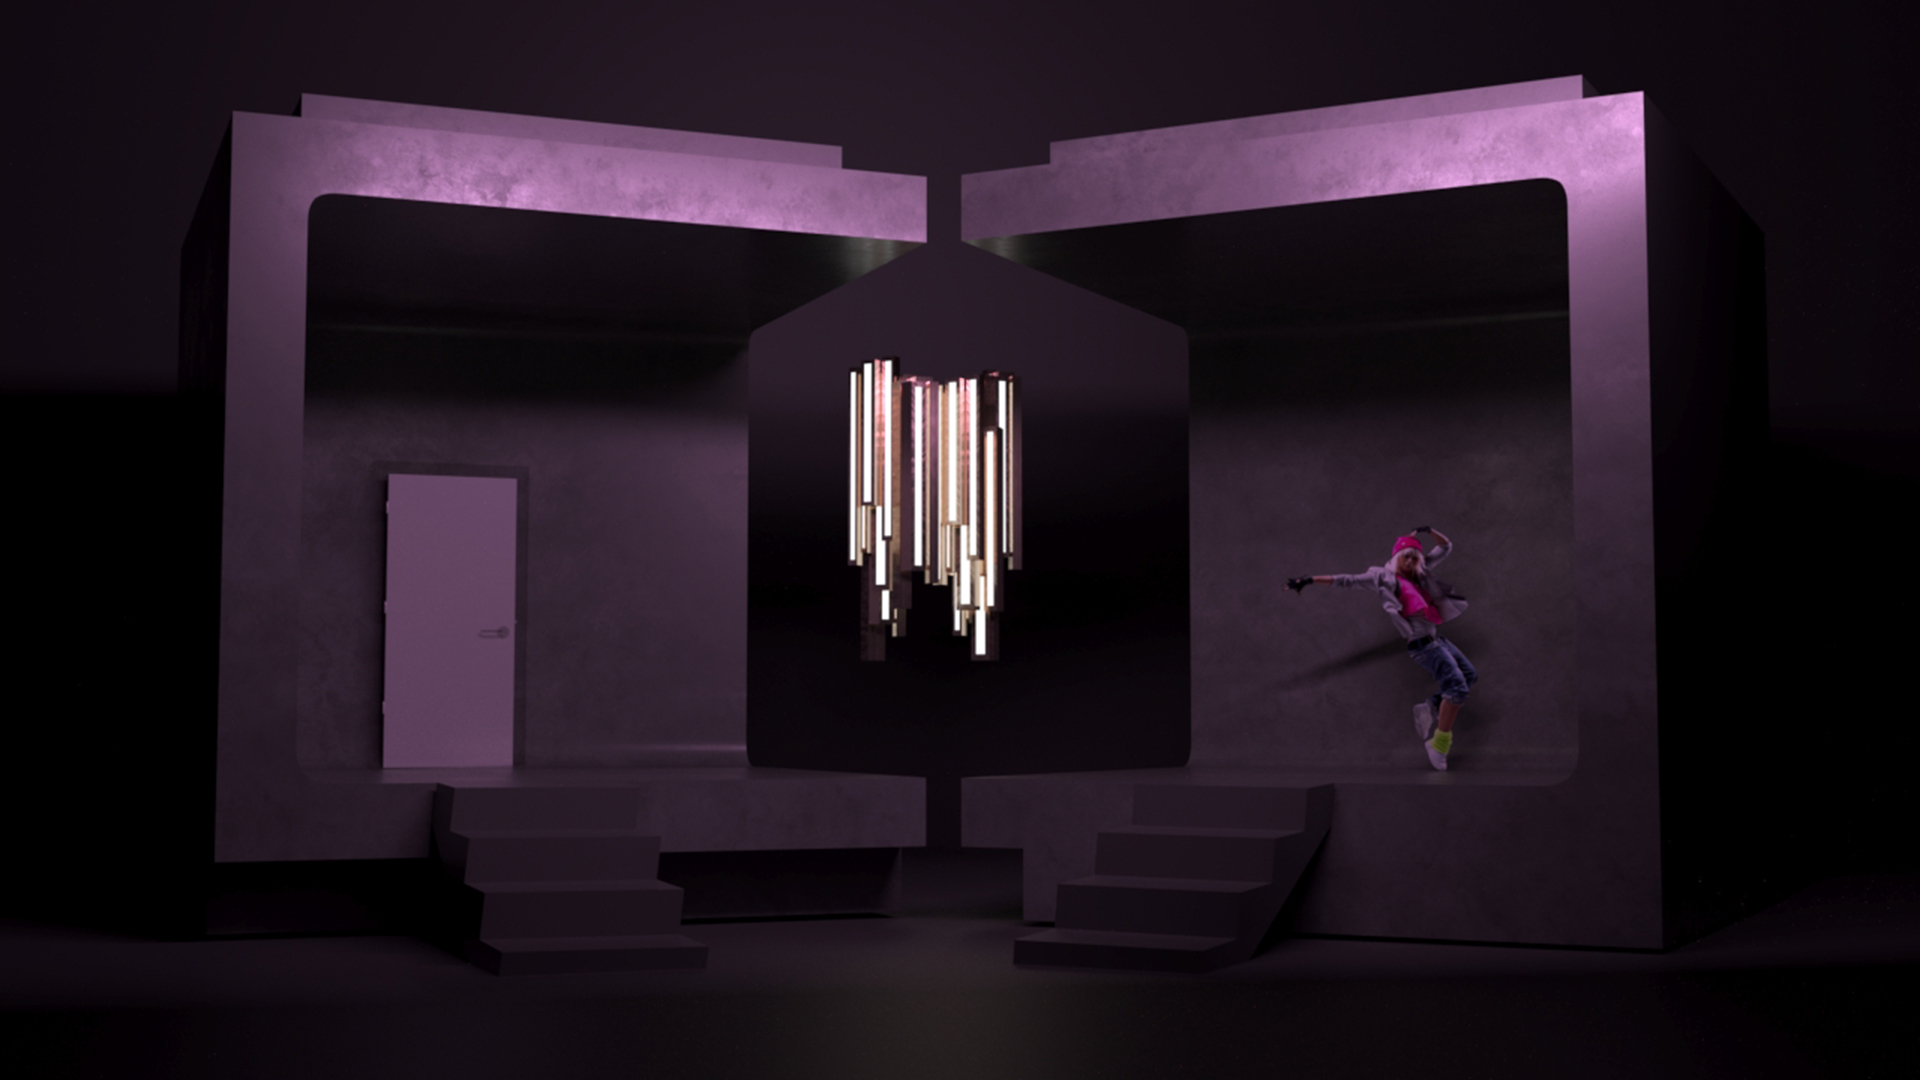 Wizualizacja przedstawiająca próbę odtworzenia scenografii do spektaklu „Aida” będąca ćwiczeniem semestralnym. Forma ustawiona centralnie i oświetlona fioletowym światłem scenicznym. Dodatkowo dla zasugerowania skali umieszczono ludzką sylwetkę. W centralnym punkcie umieszczono ozdobne oświetlenie występujące w pierwowzorze. 